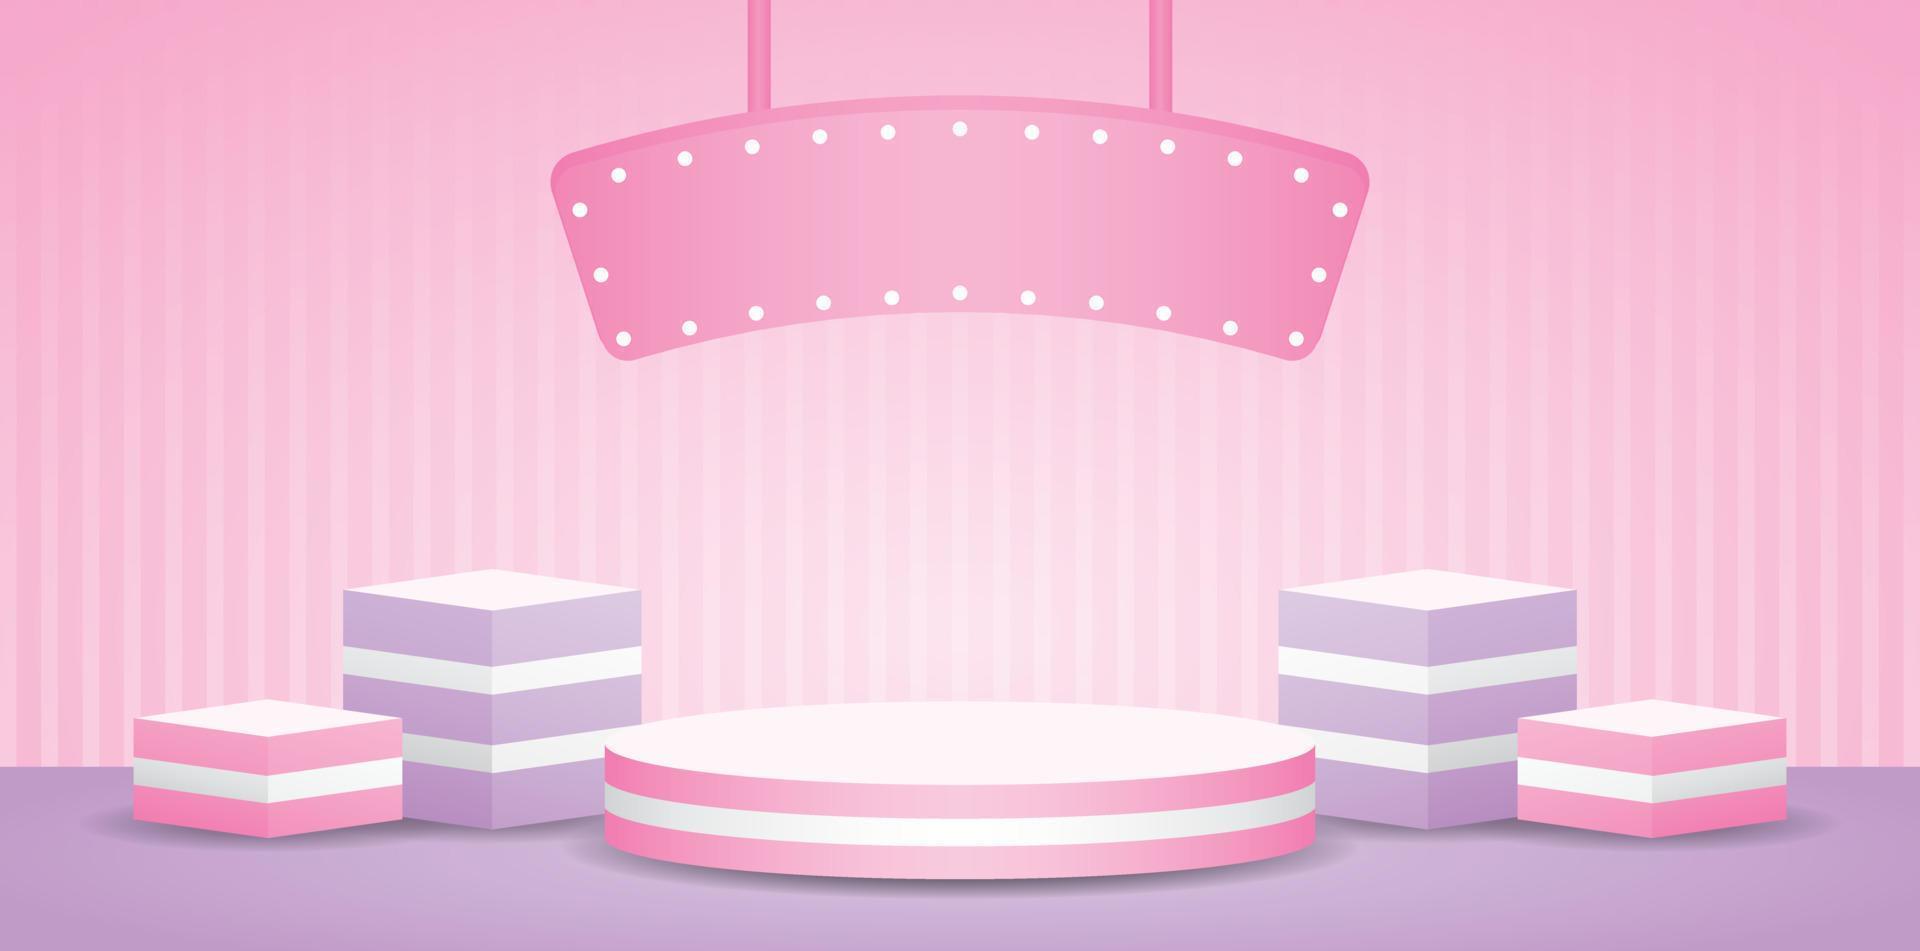 söt trendig randig podium visa uppsättning med glödlampa hängande tecken på ljuv pastell rosa vägg och lila golv 3d illustration vektor för sätta skönhet och kosmetisk produkt